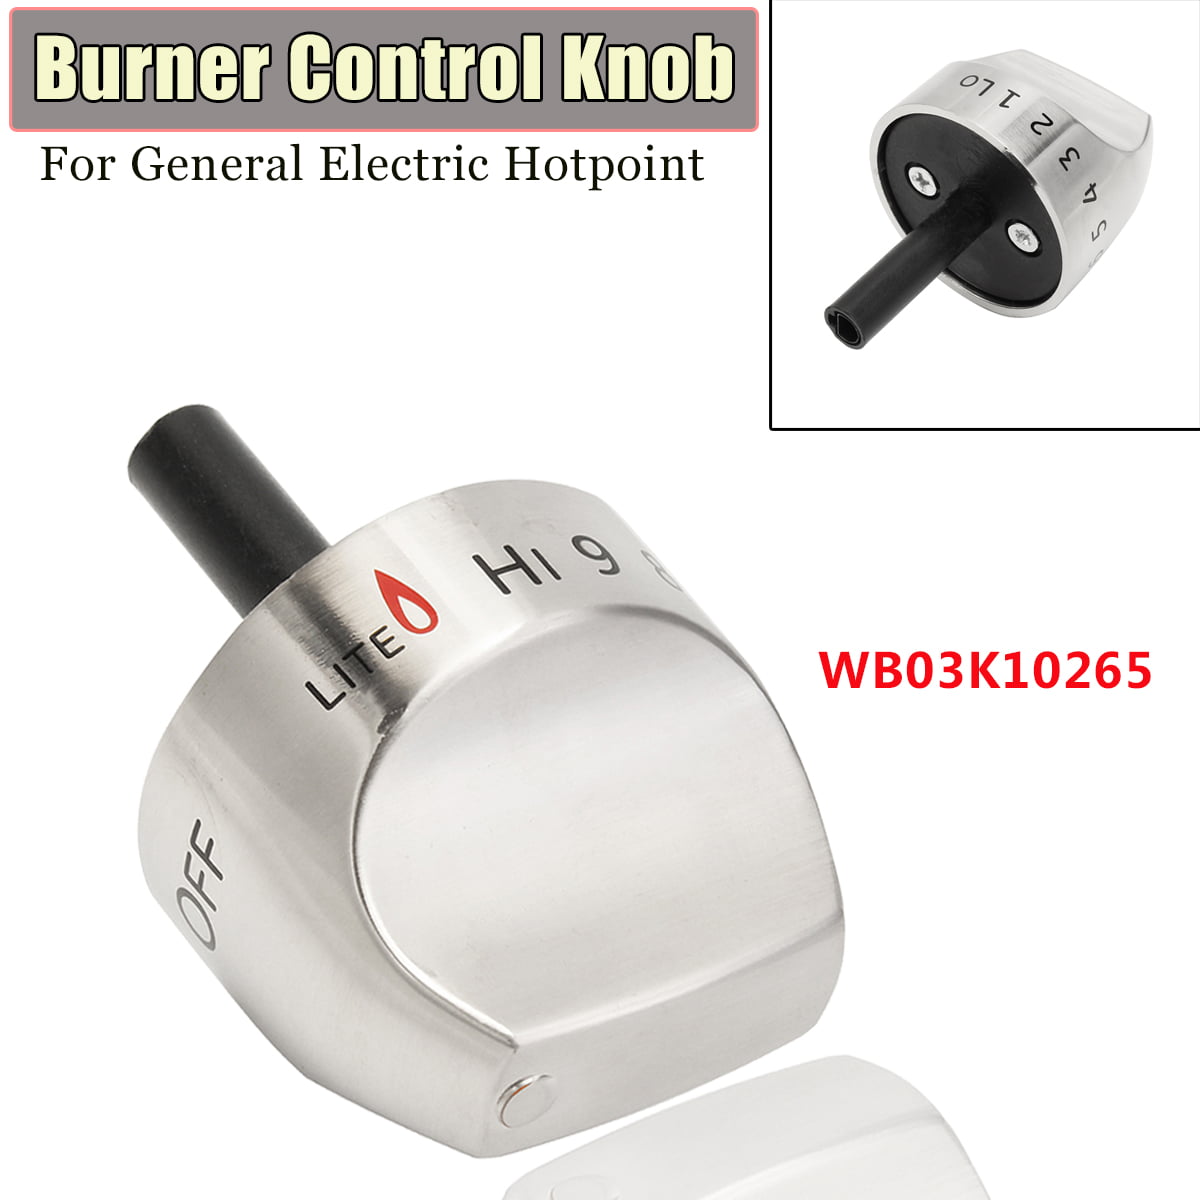 Top Burner Knob for General Electric Range WB03K10265 